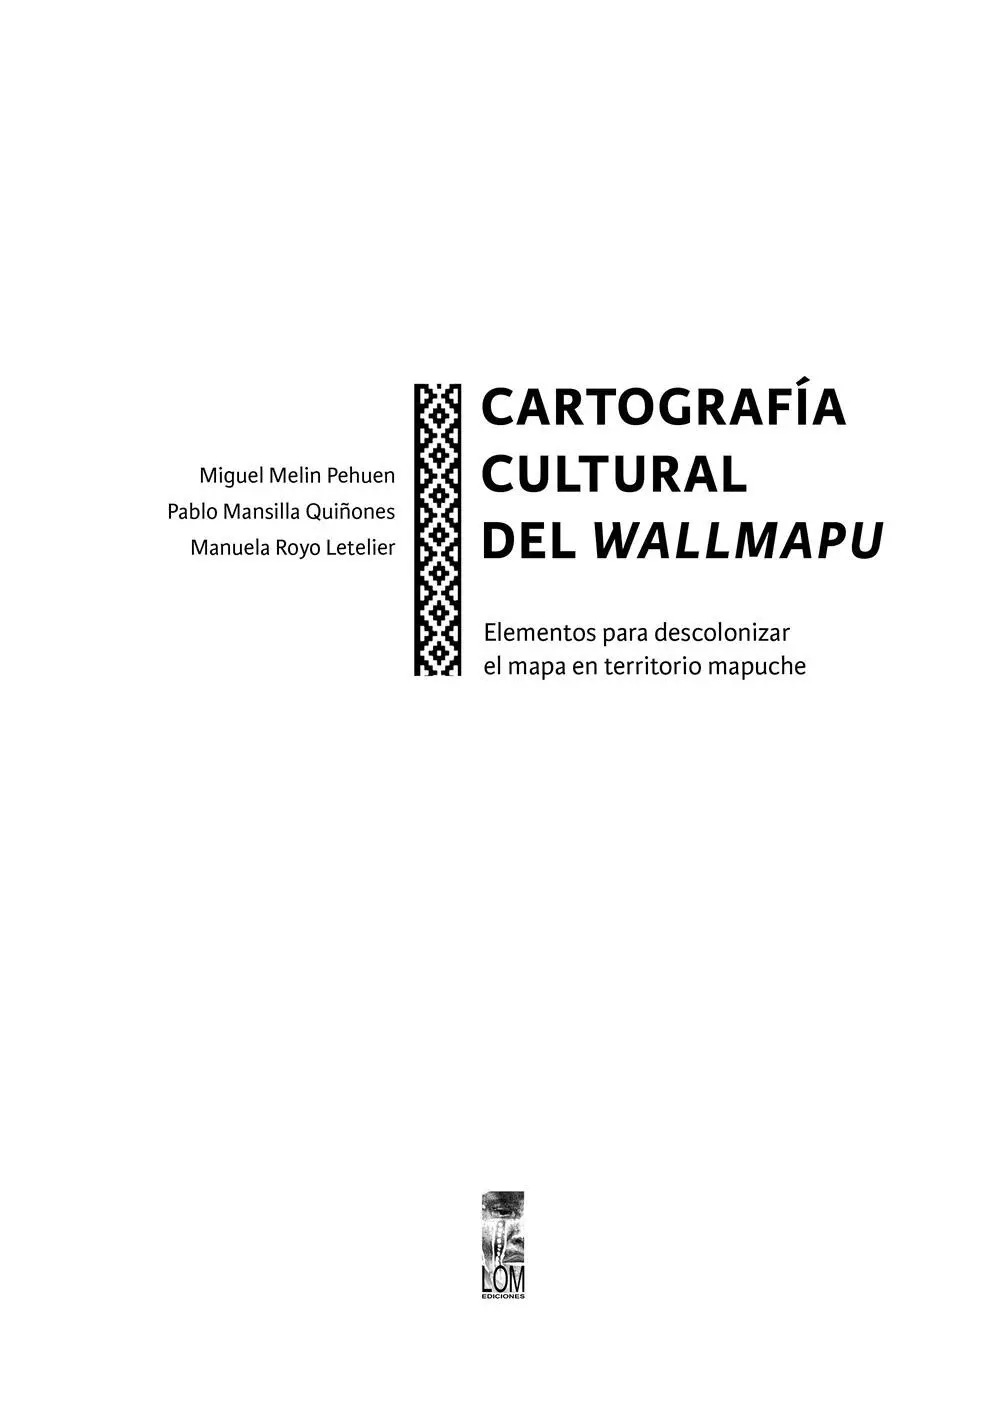 LOM edicionesPrimera edición abril 2019 Impreso en 1500 ejemplares ISBN - фото 2